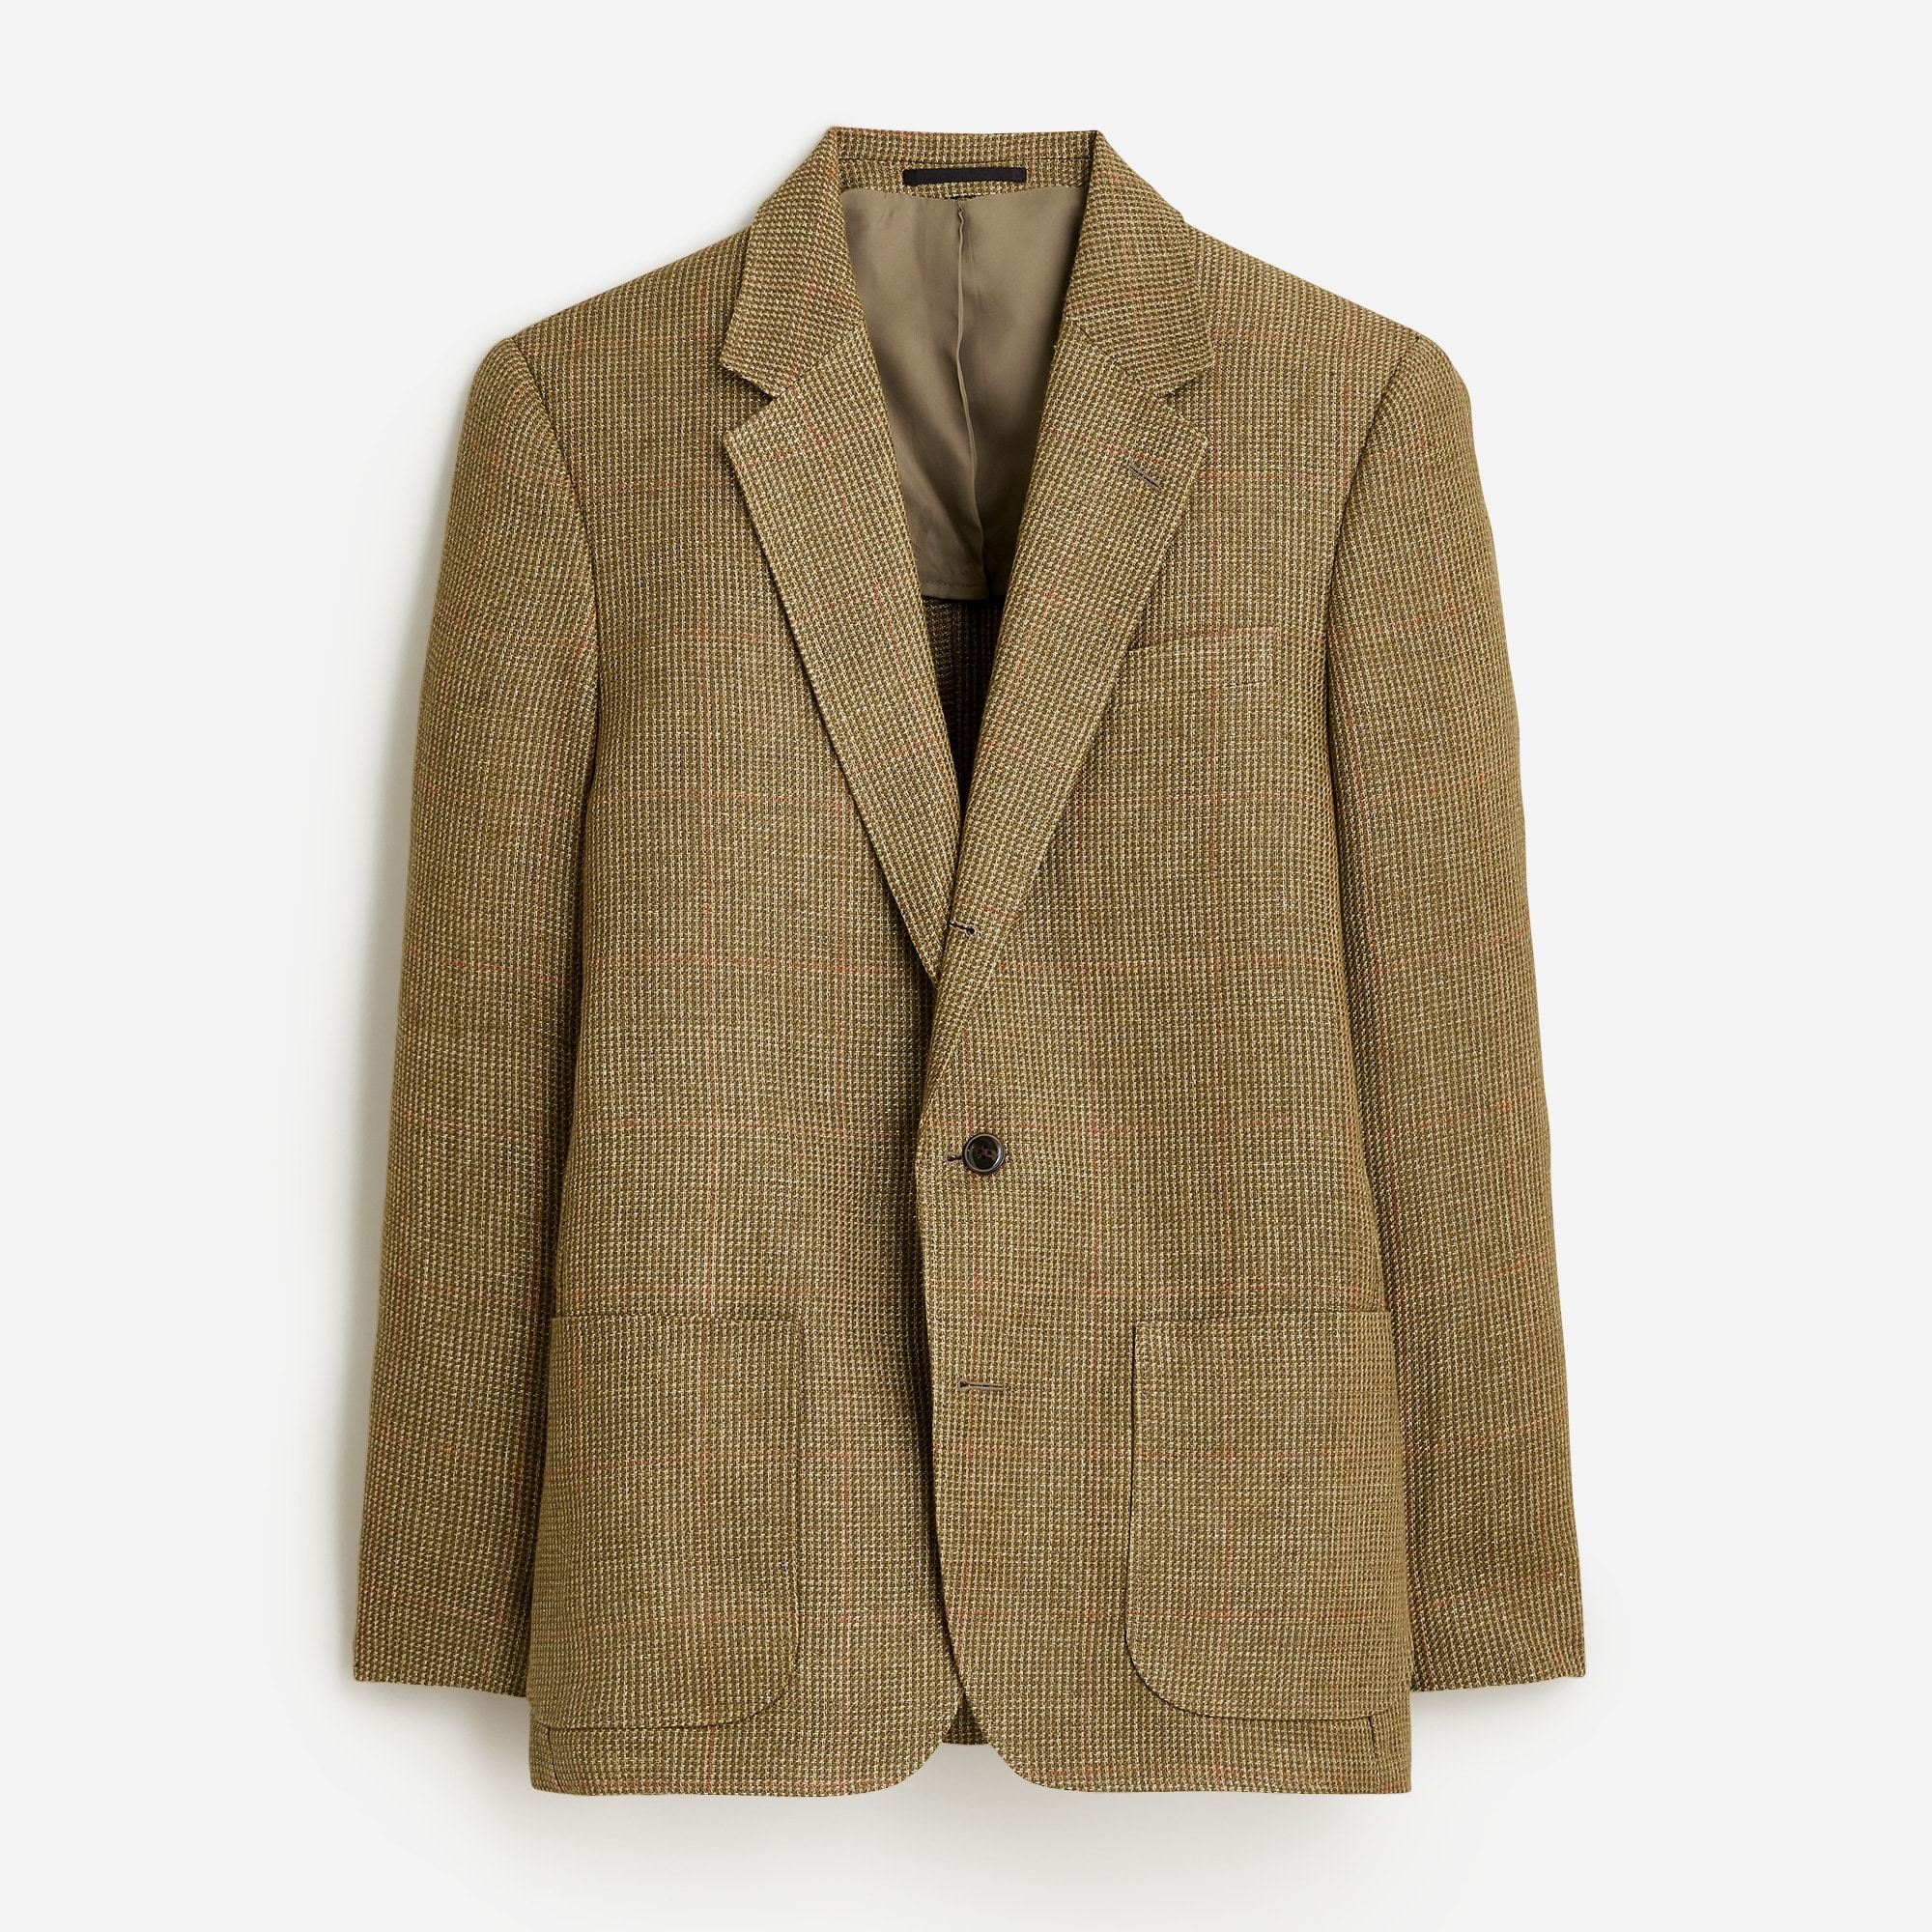  Kenmare Relaxed-fit blazer in Italian linen